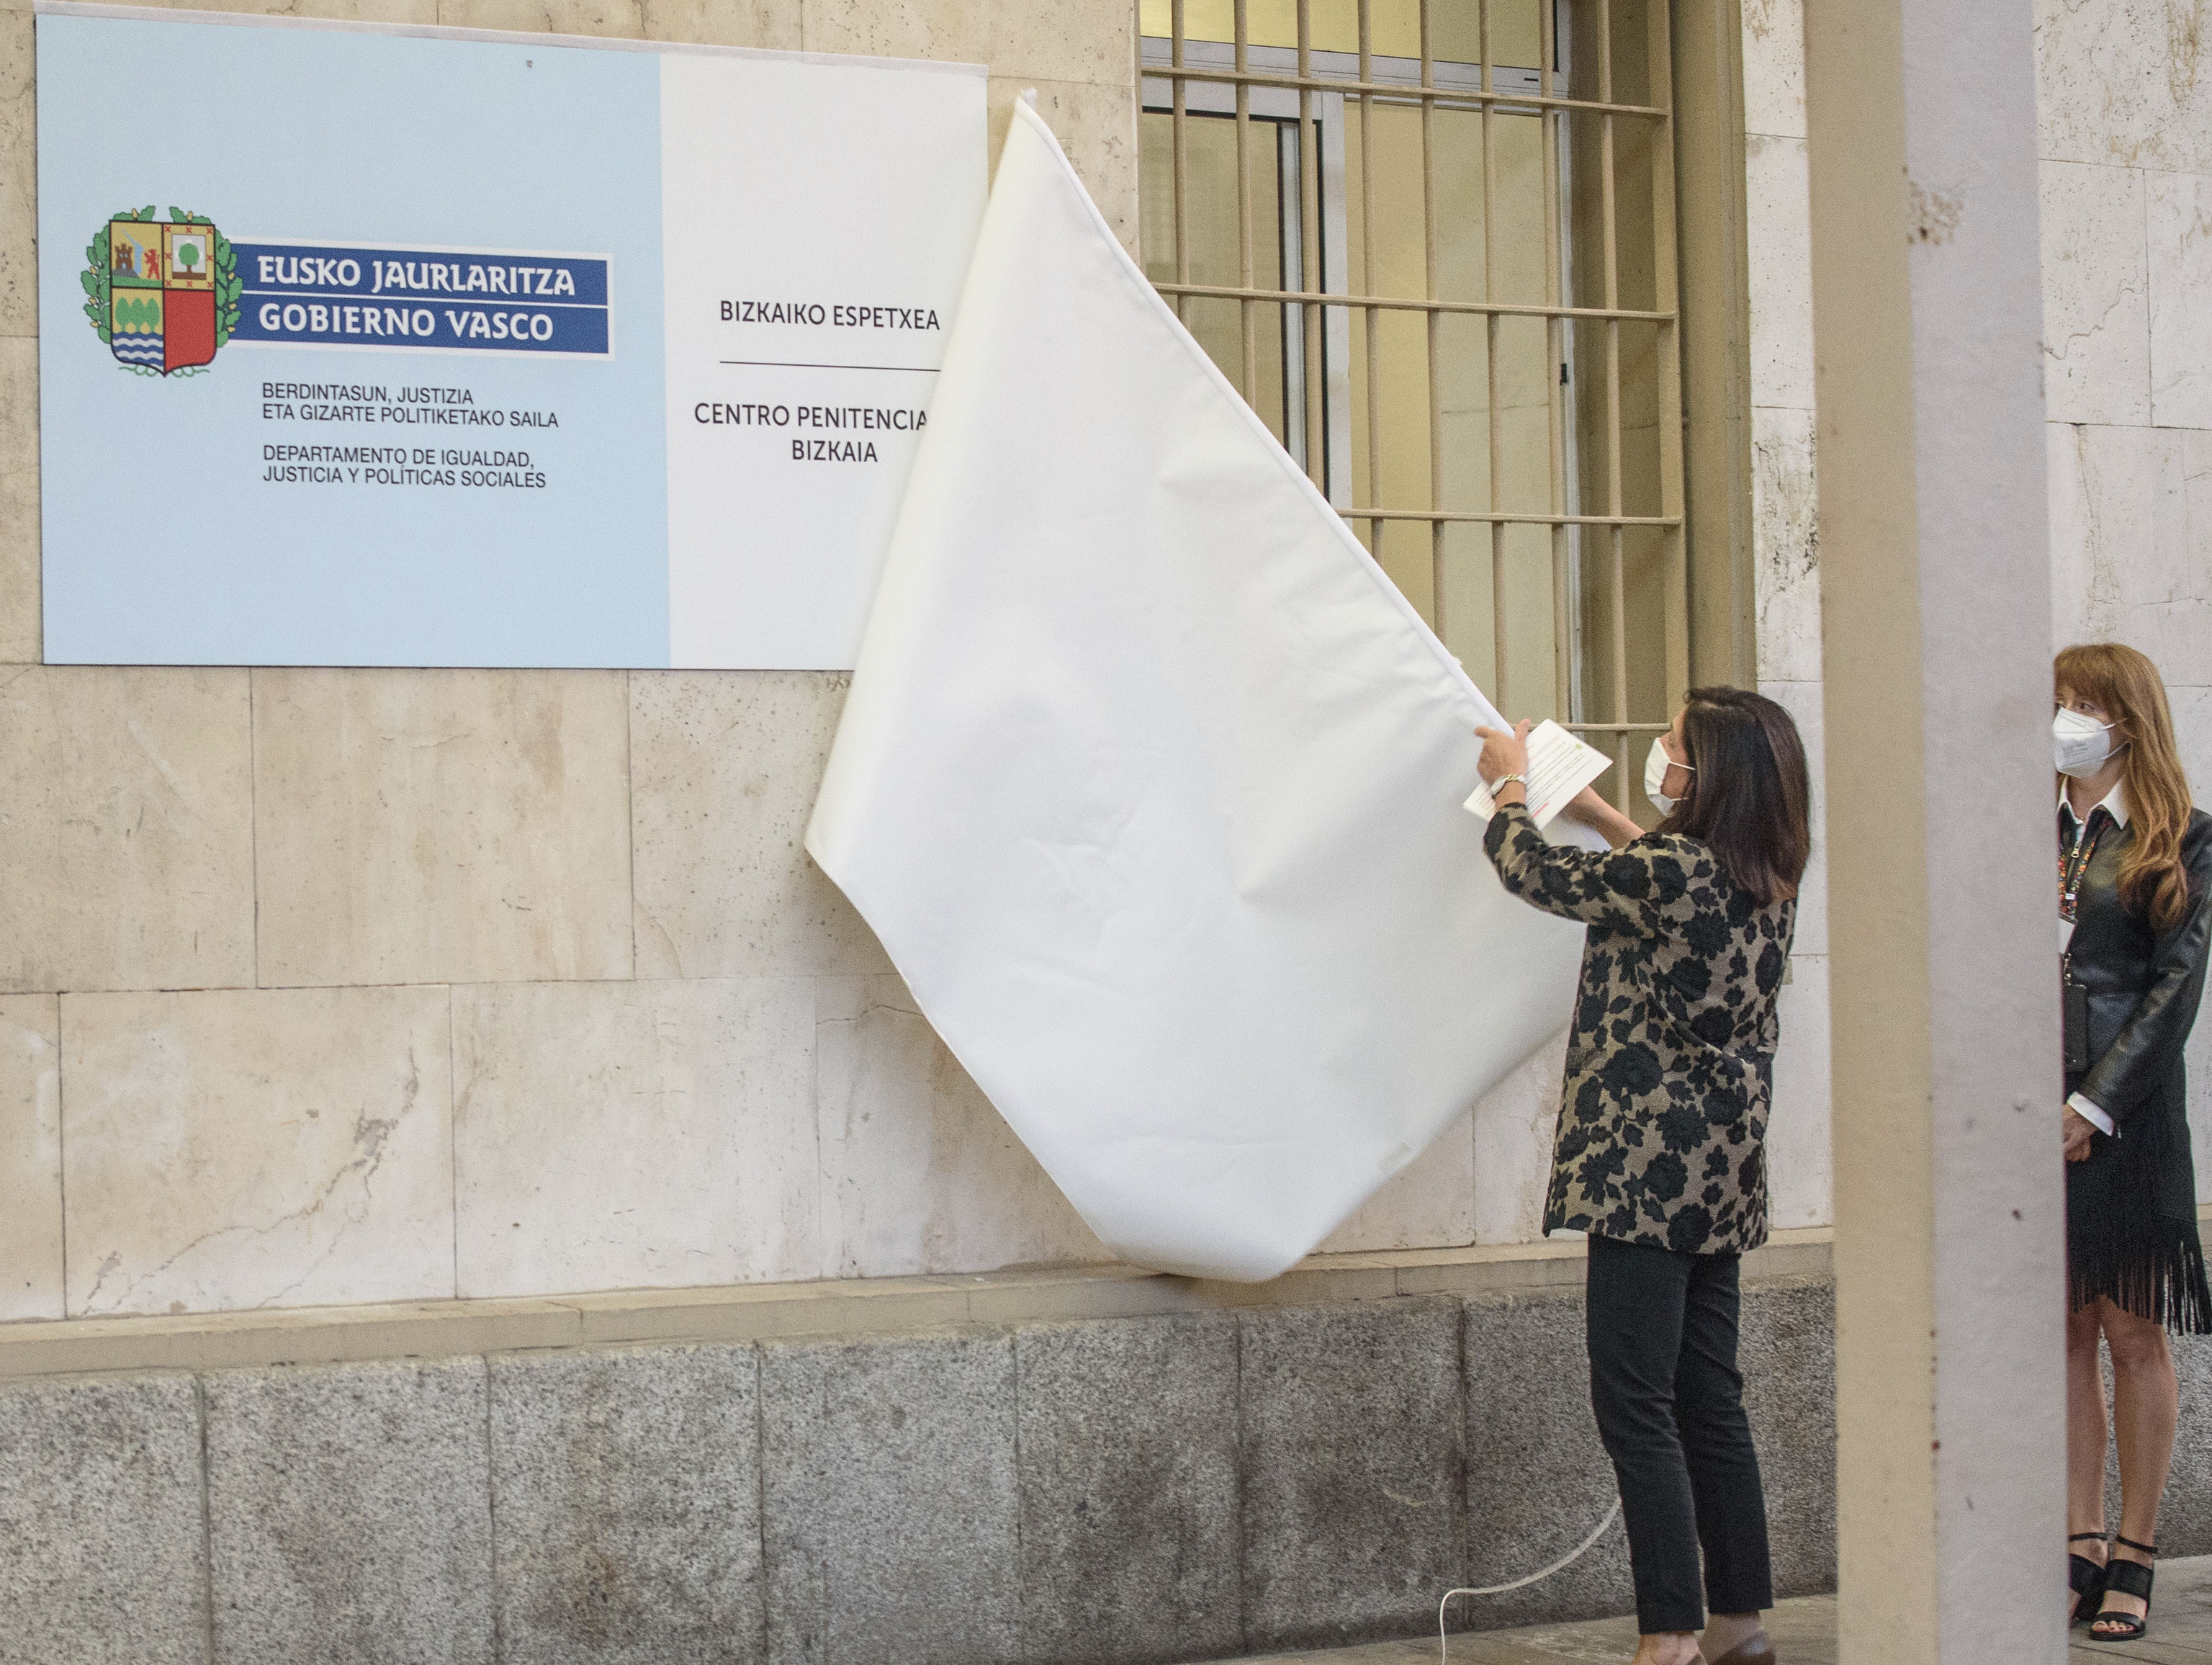 La consejera Artolazabal descubre el cartel con el logo del Gobierno vasco en la cárcel de Basauri al asumir la transferencia de las tres prisiones vascas.